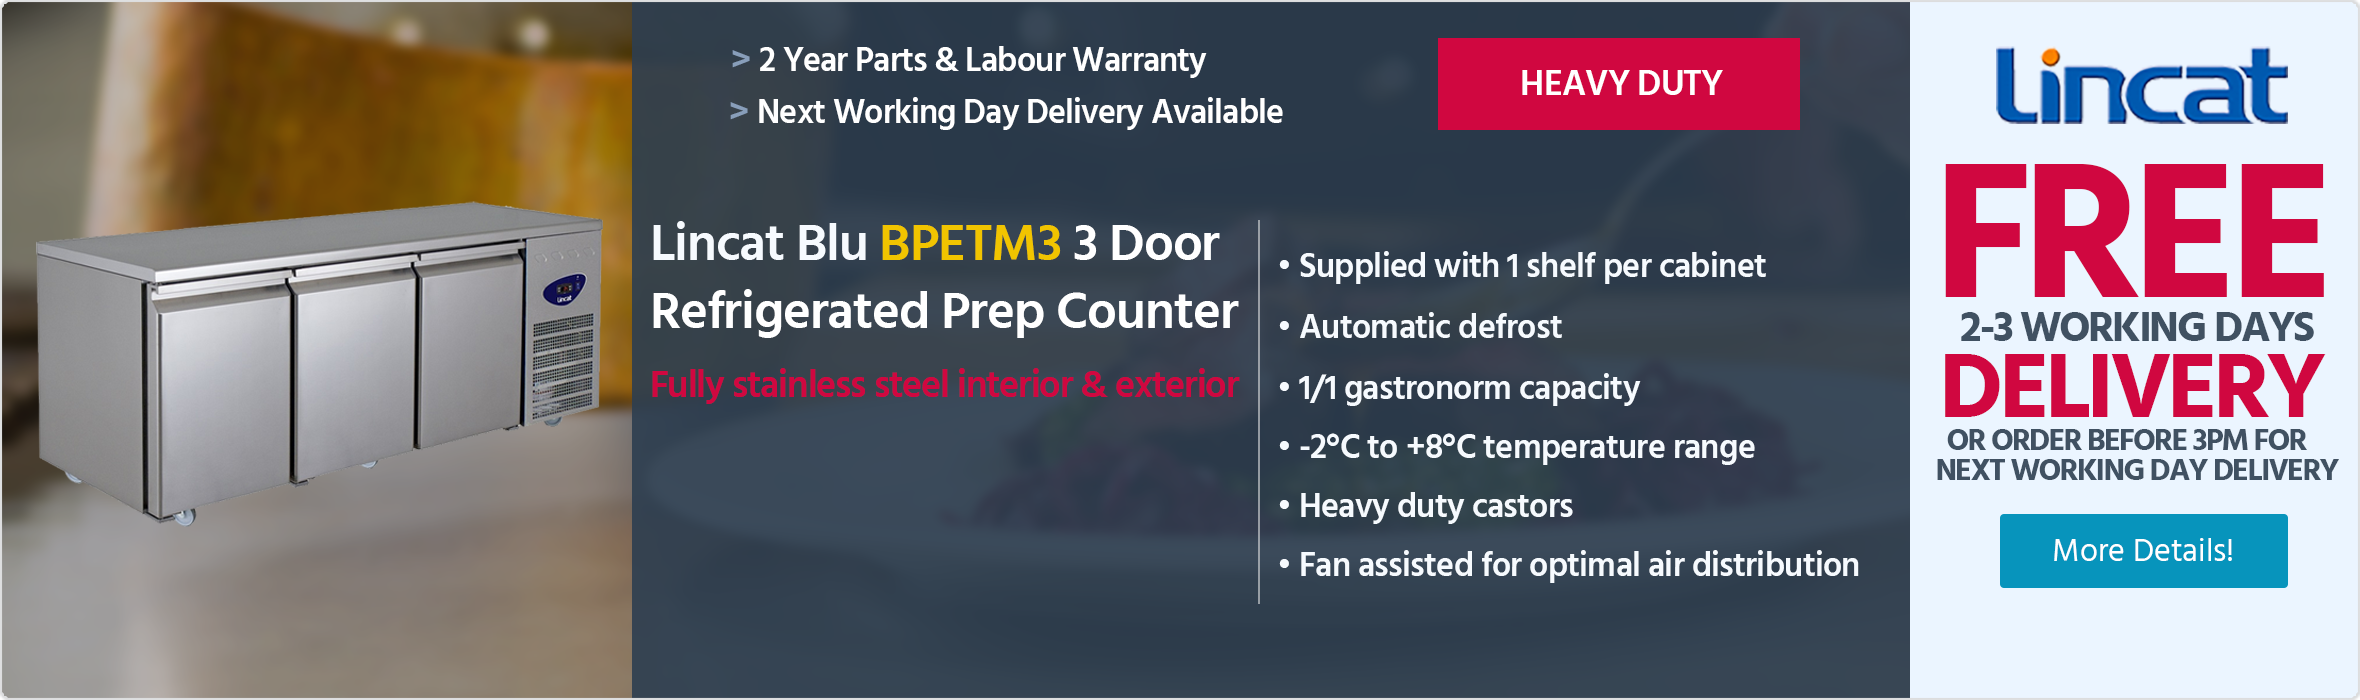 Lincat Blu BPETM3 3 Door Stainless Steel Refrigerated Prep Counter